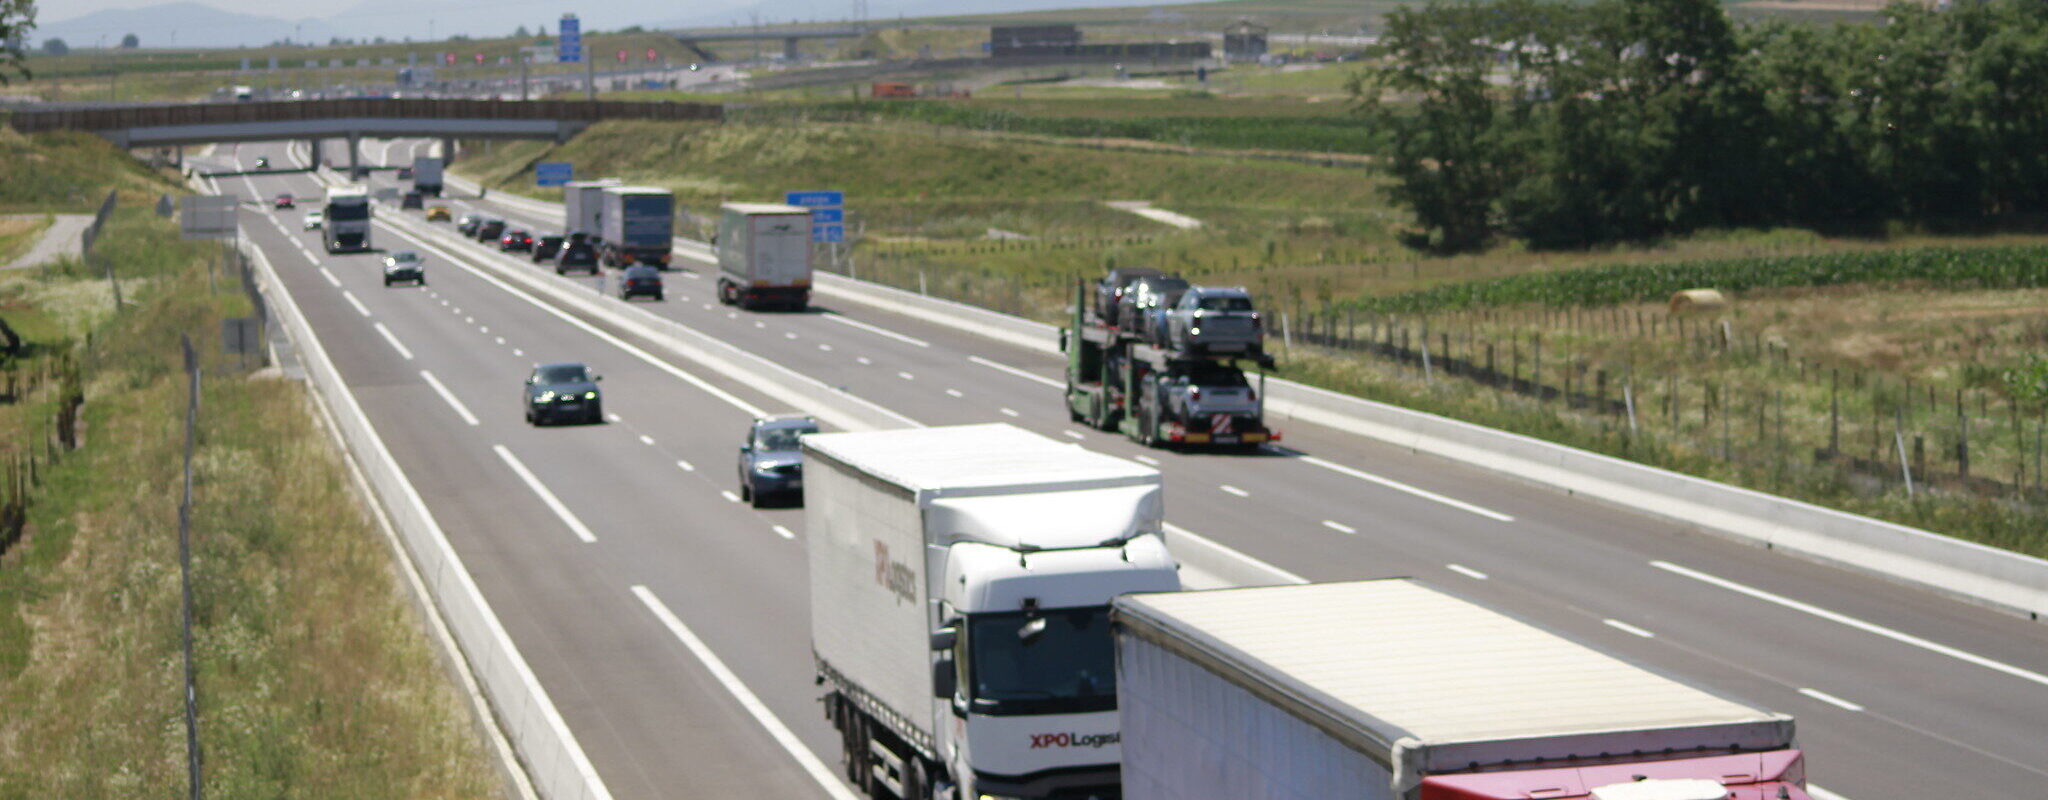 GCO : l’effet « aspirateur à camions » déjà au-delà des prévisions